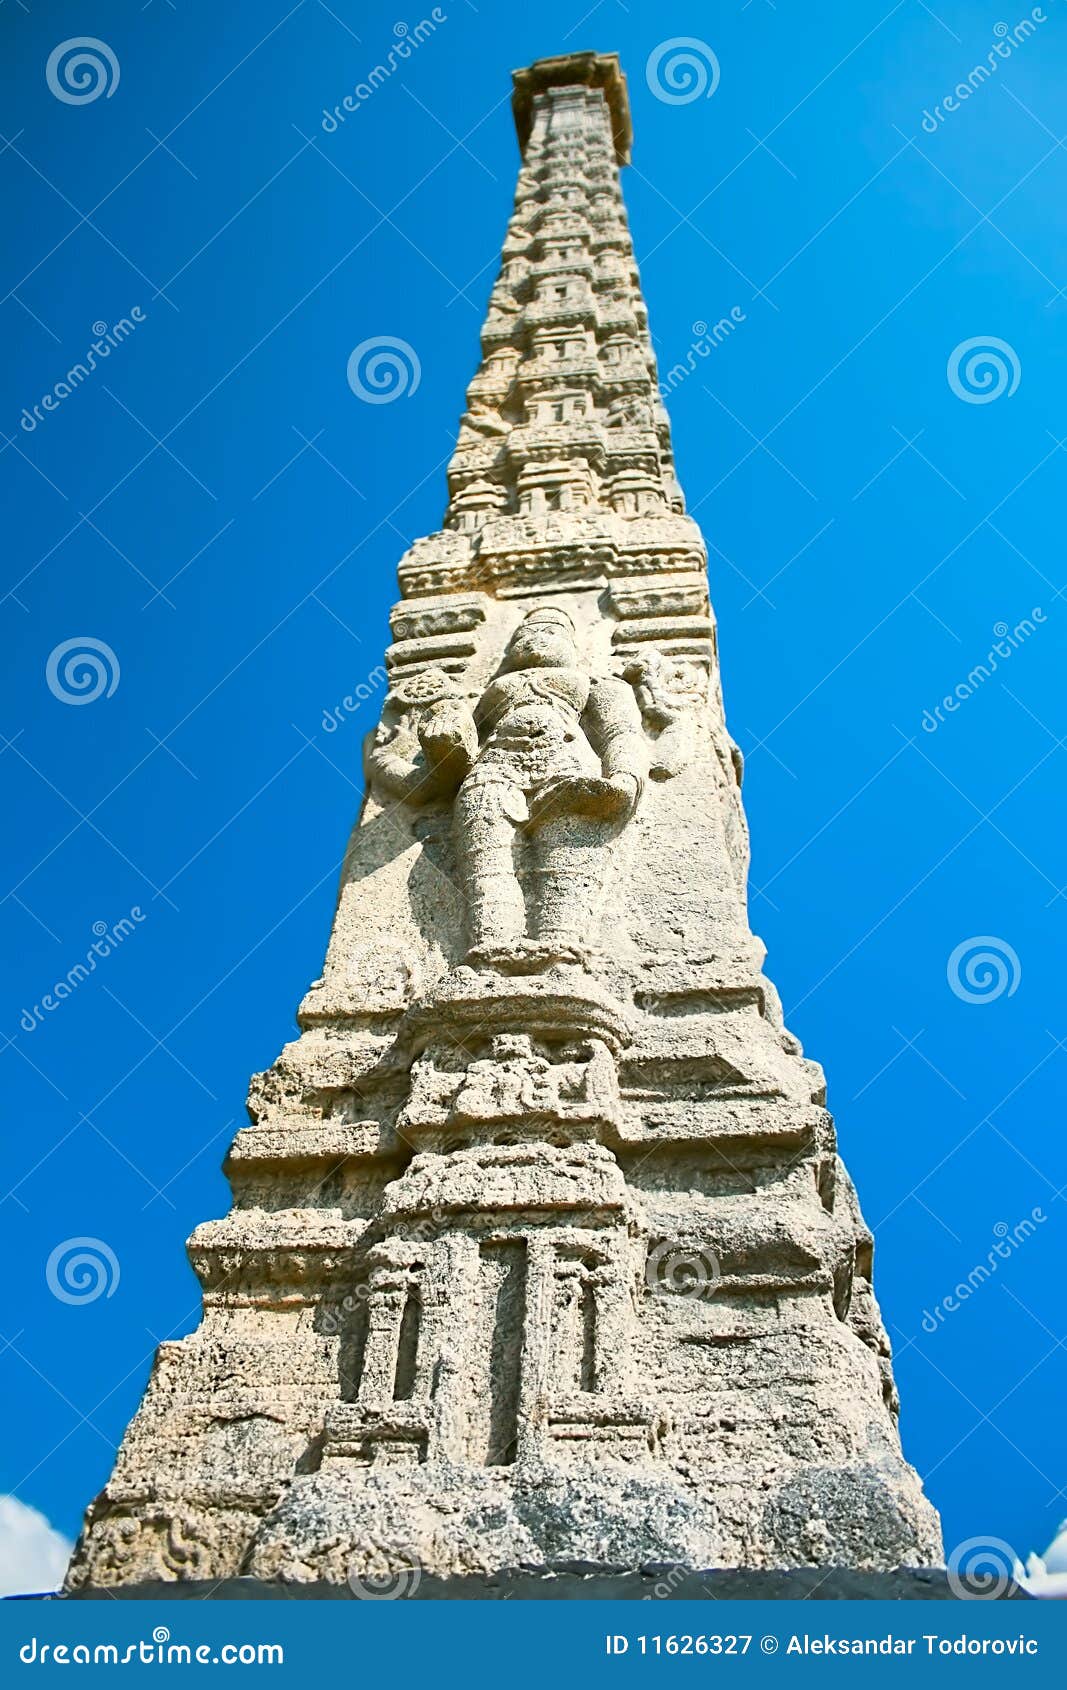 pillar sculptures on beach in pondicherry